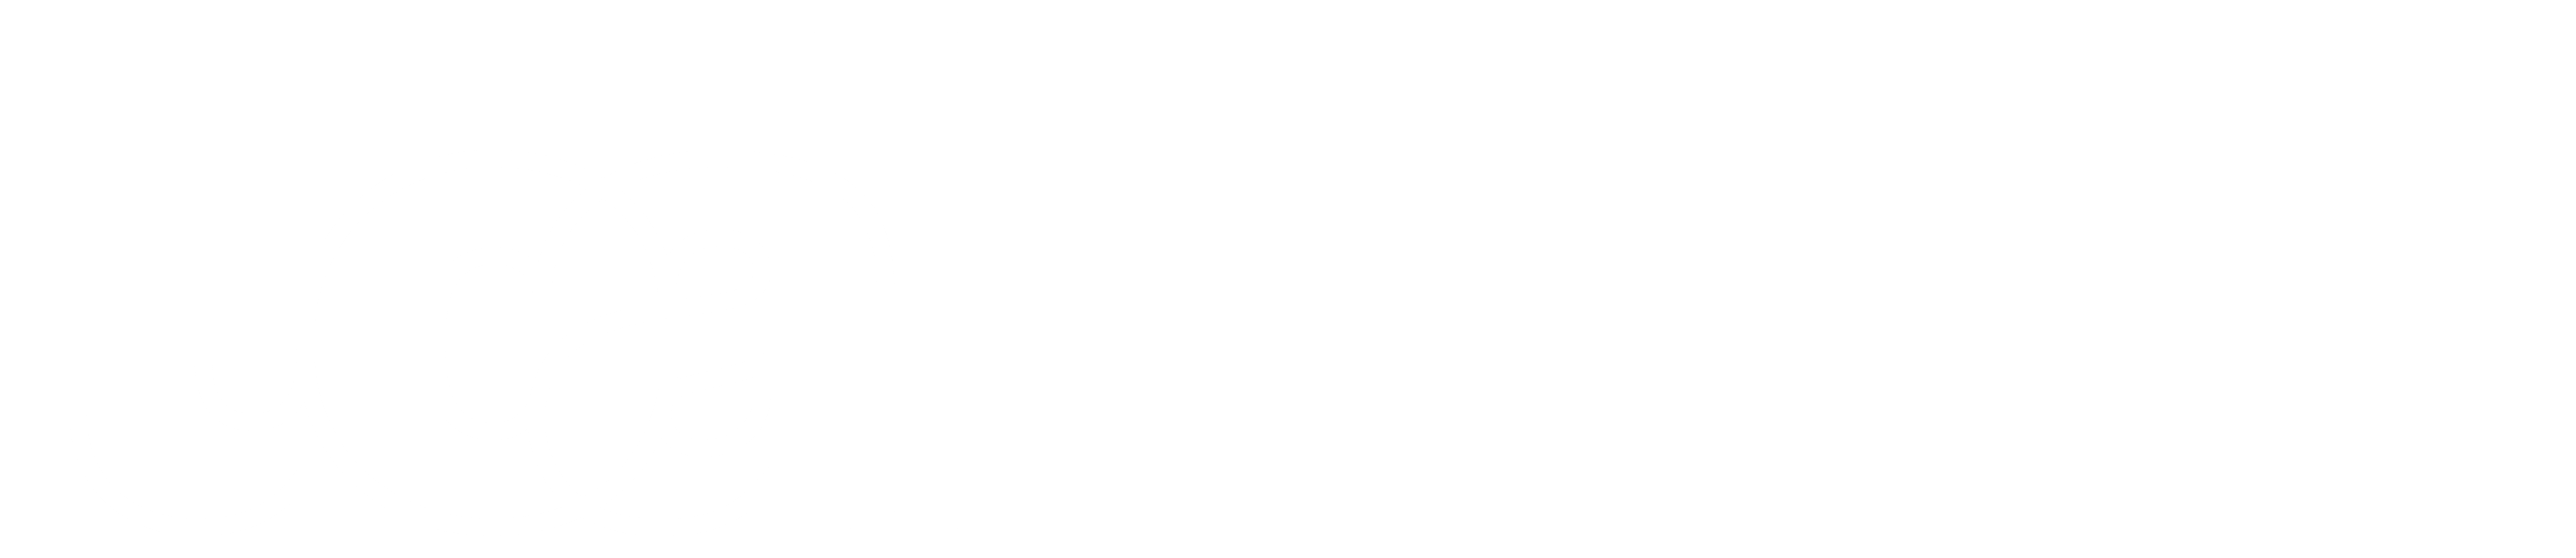 UC-UCAL